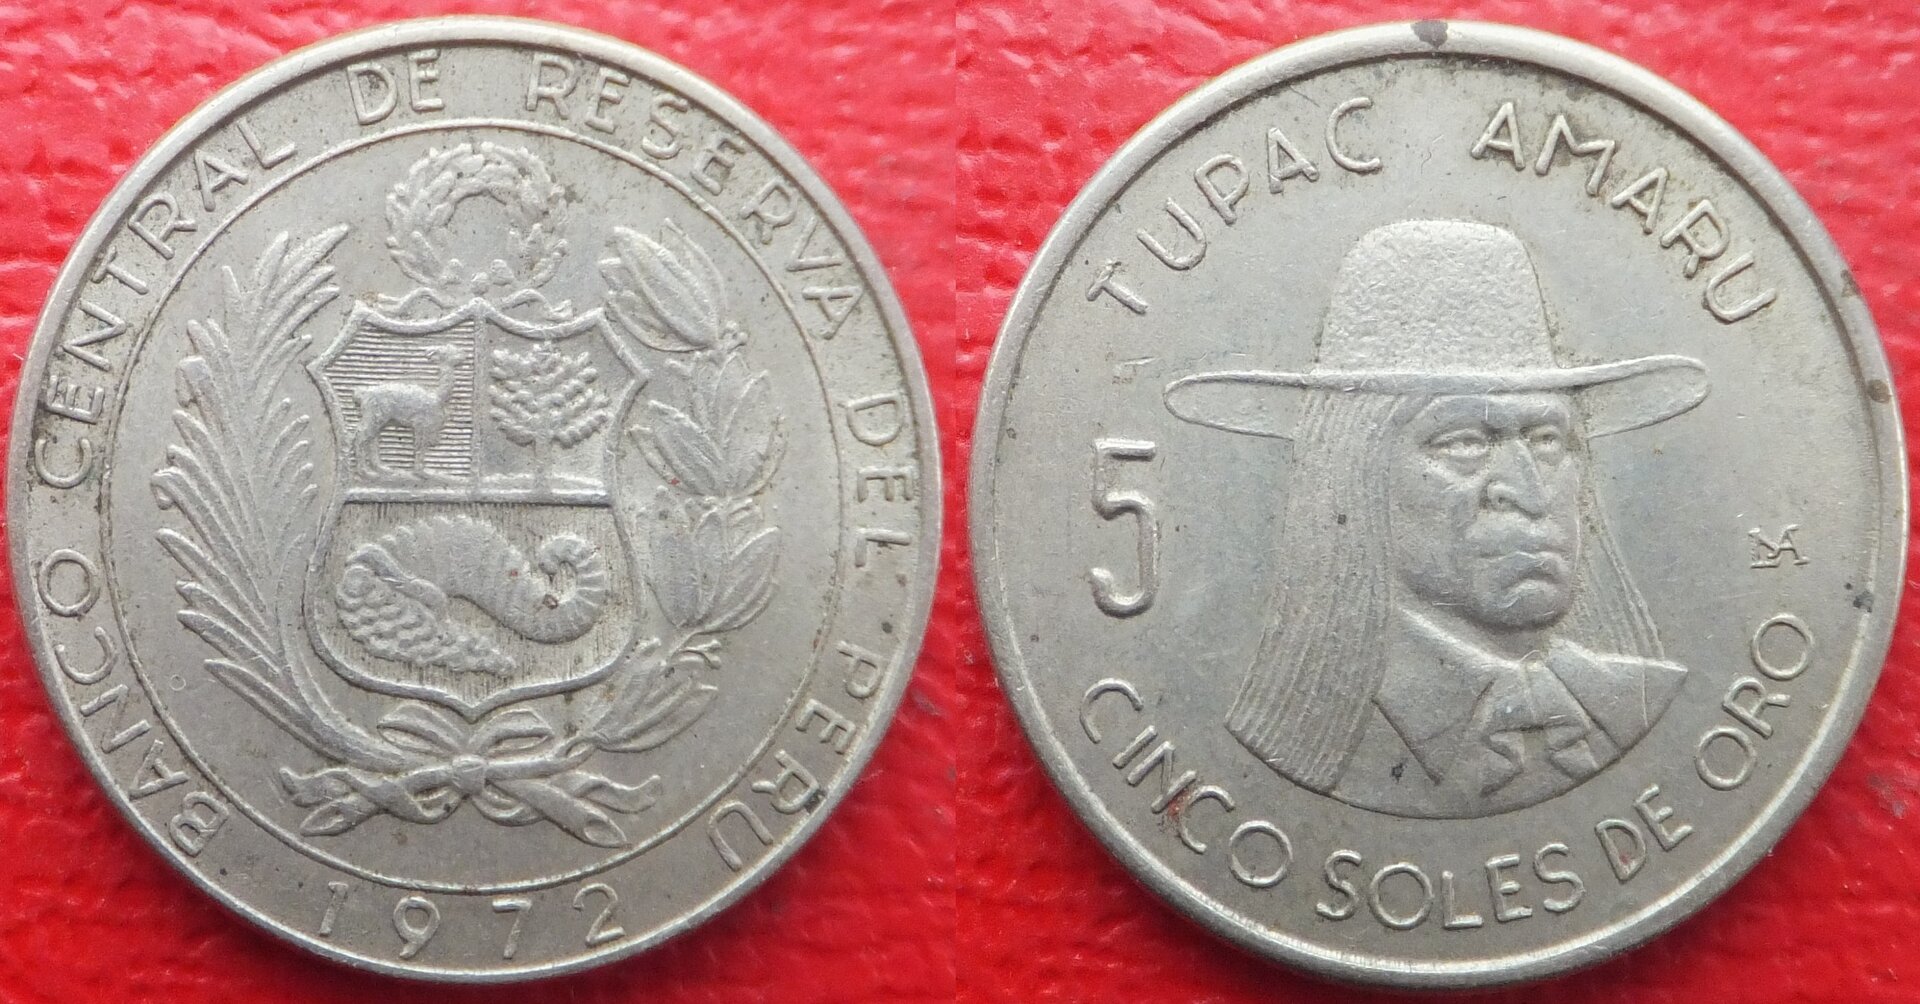 Peru 5 soles de oro 1972 (3).jpg